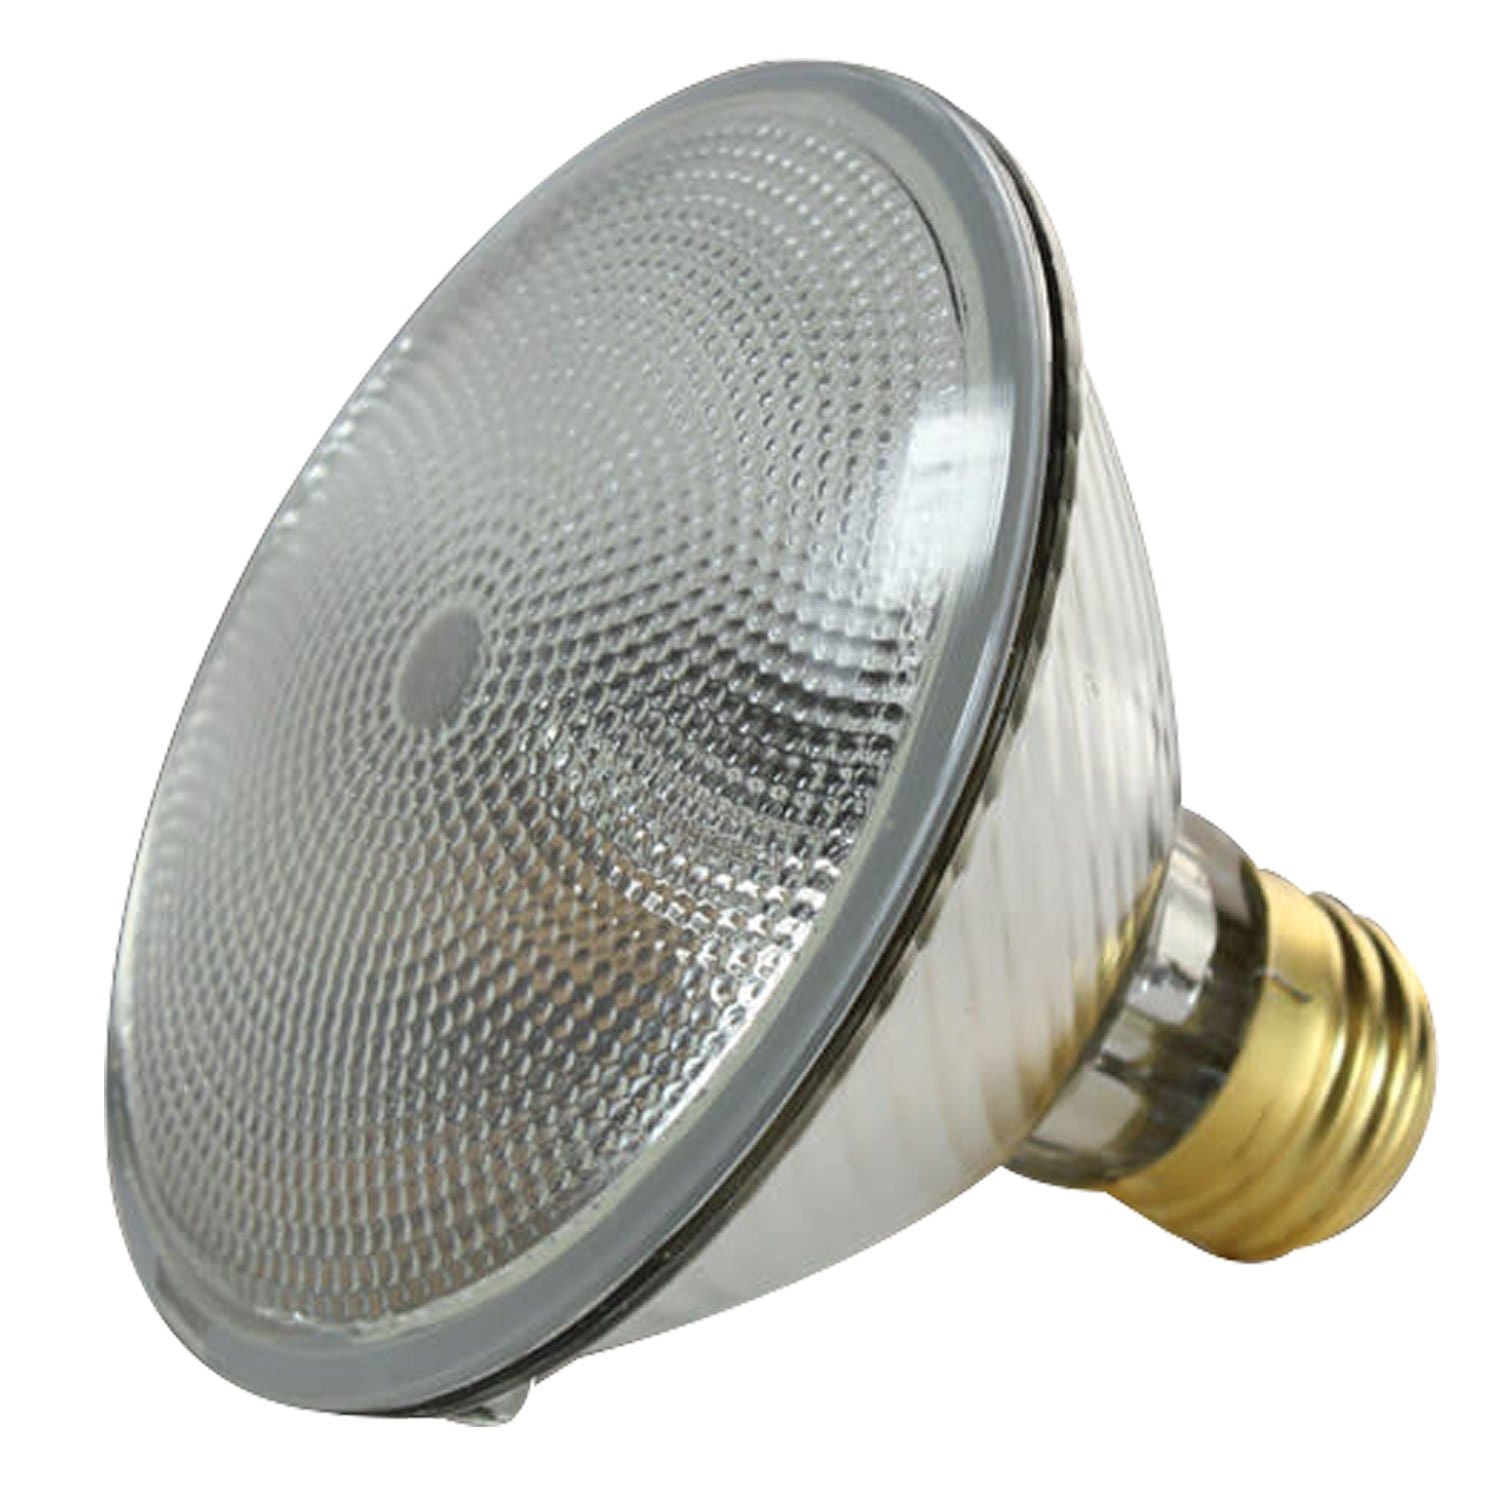 Ushio 60PAR30/FL30/120V 60W Lamp - ProSound and Stage Lighting